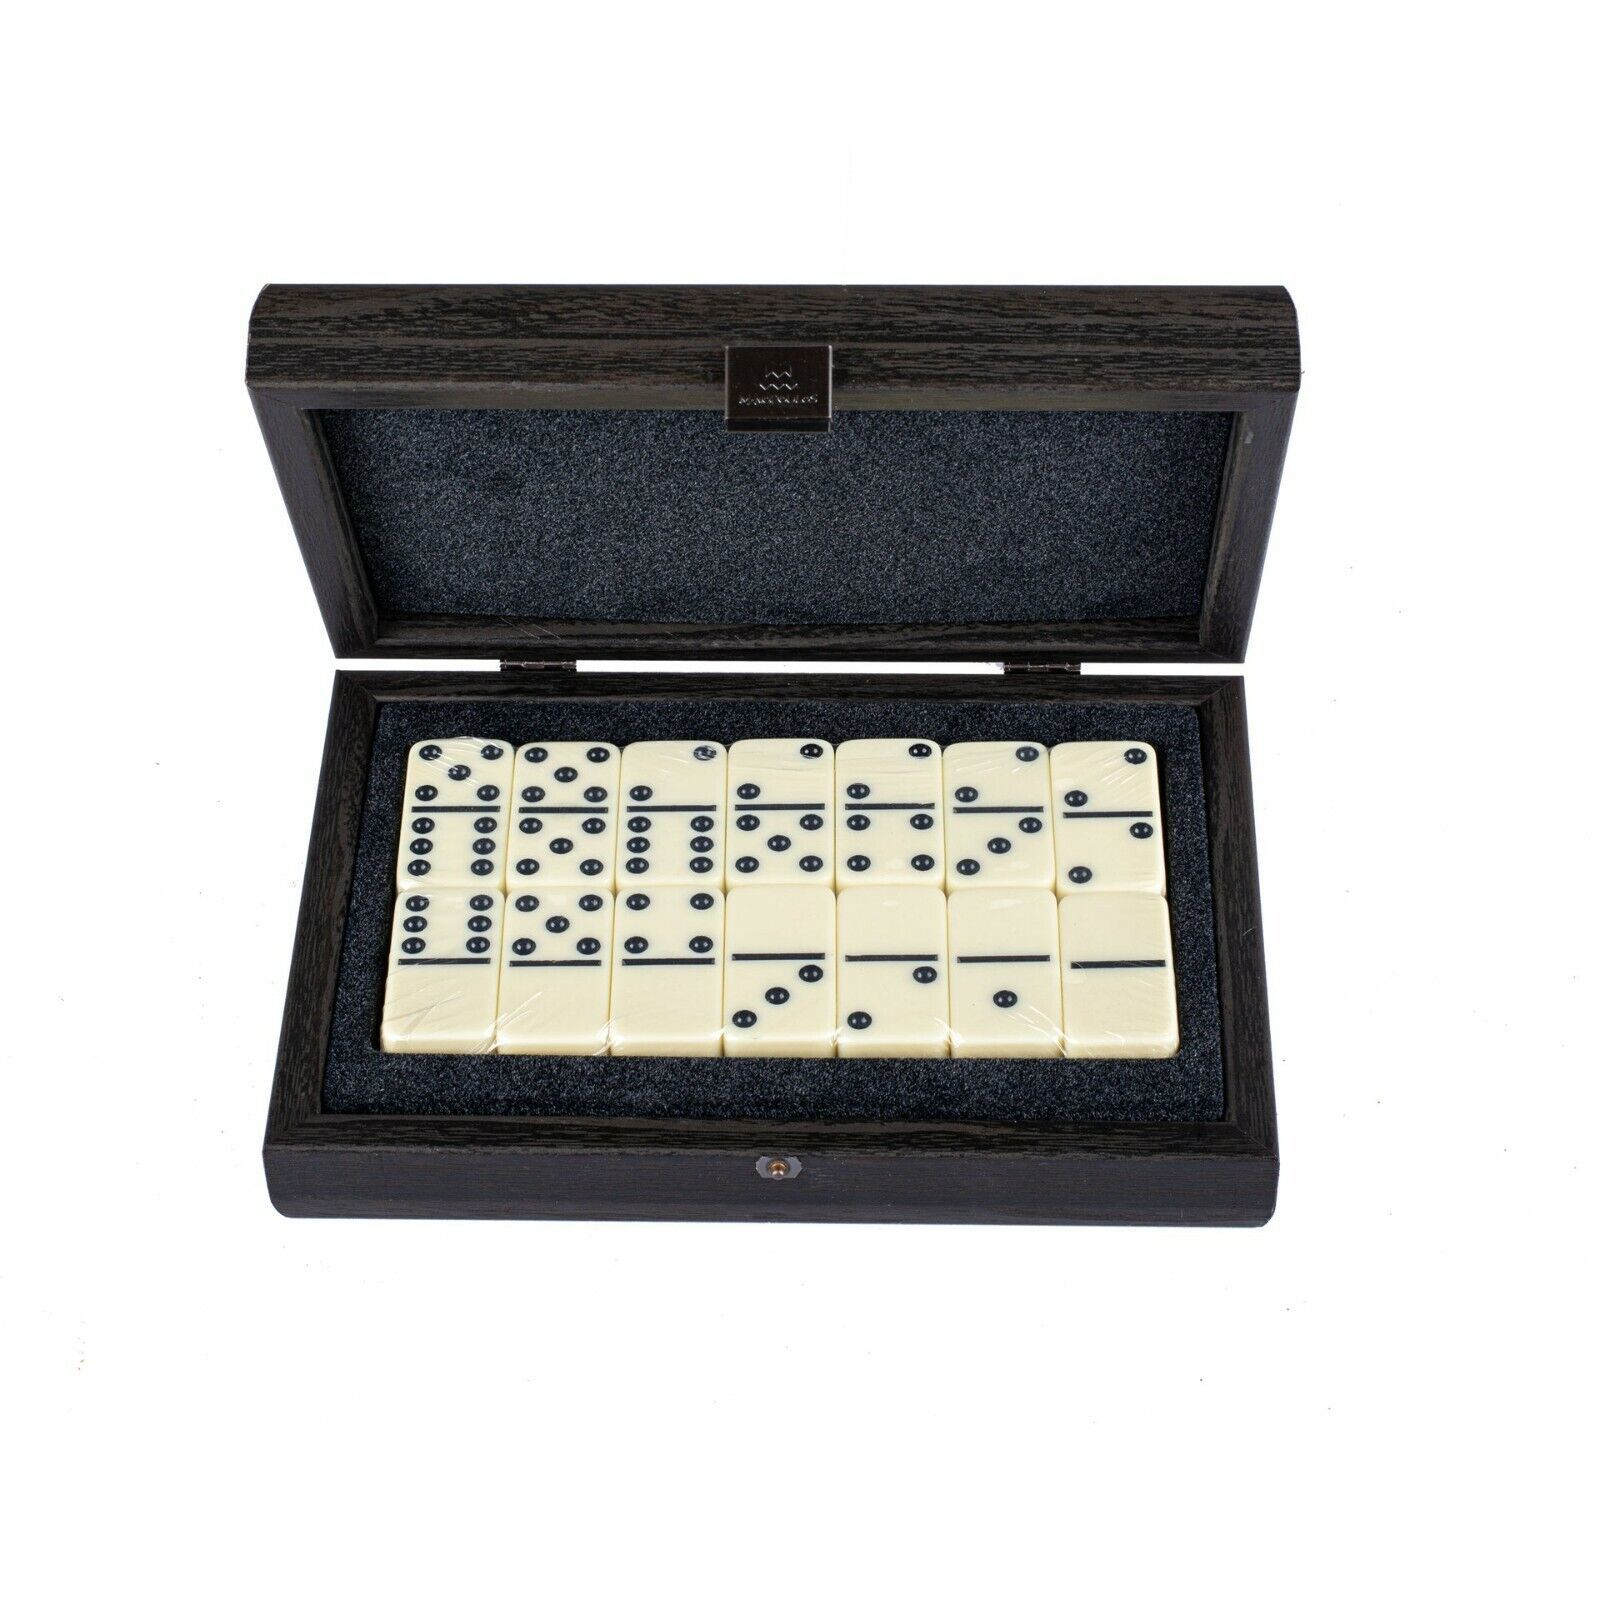 domino / Dominoes Set in BLACK case - Premium quality domino tiles - $62.78